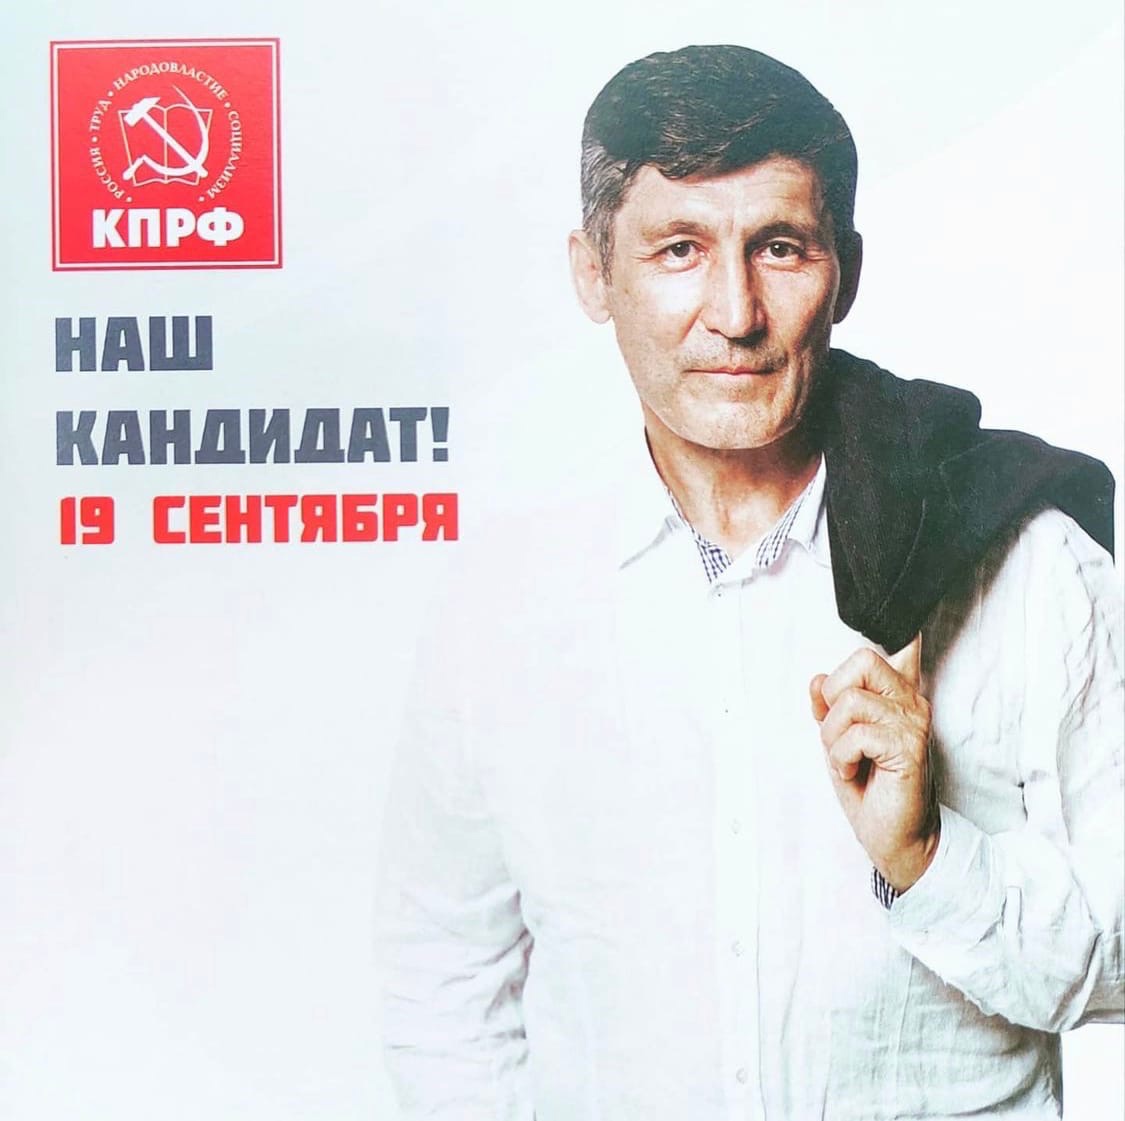 Хуснутдинов баллотировался в депутаты горсовета